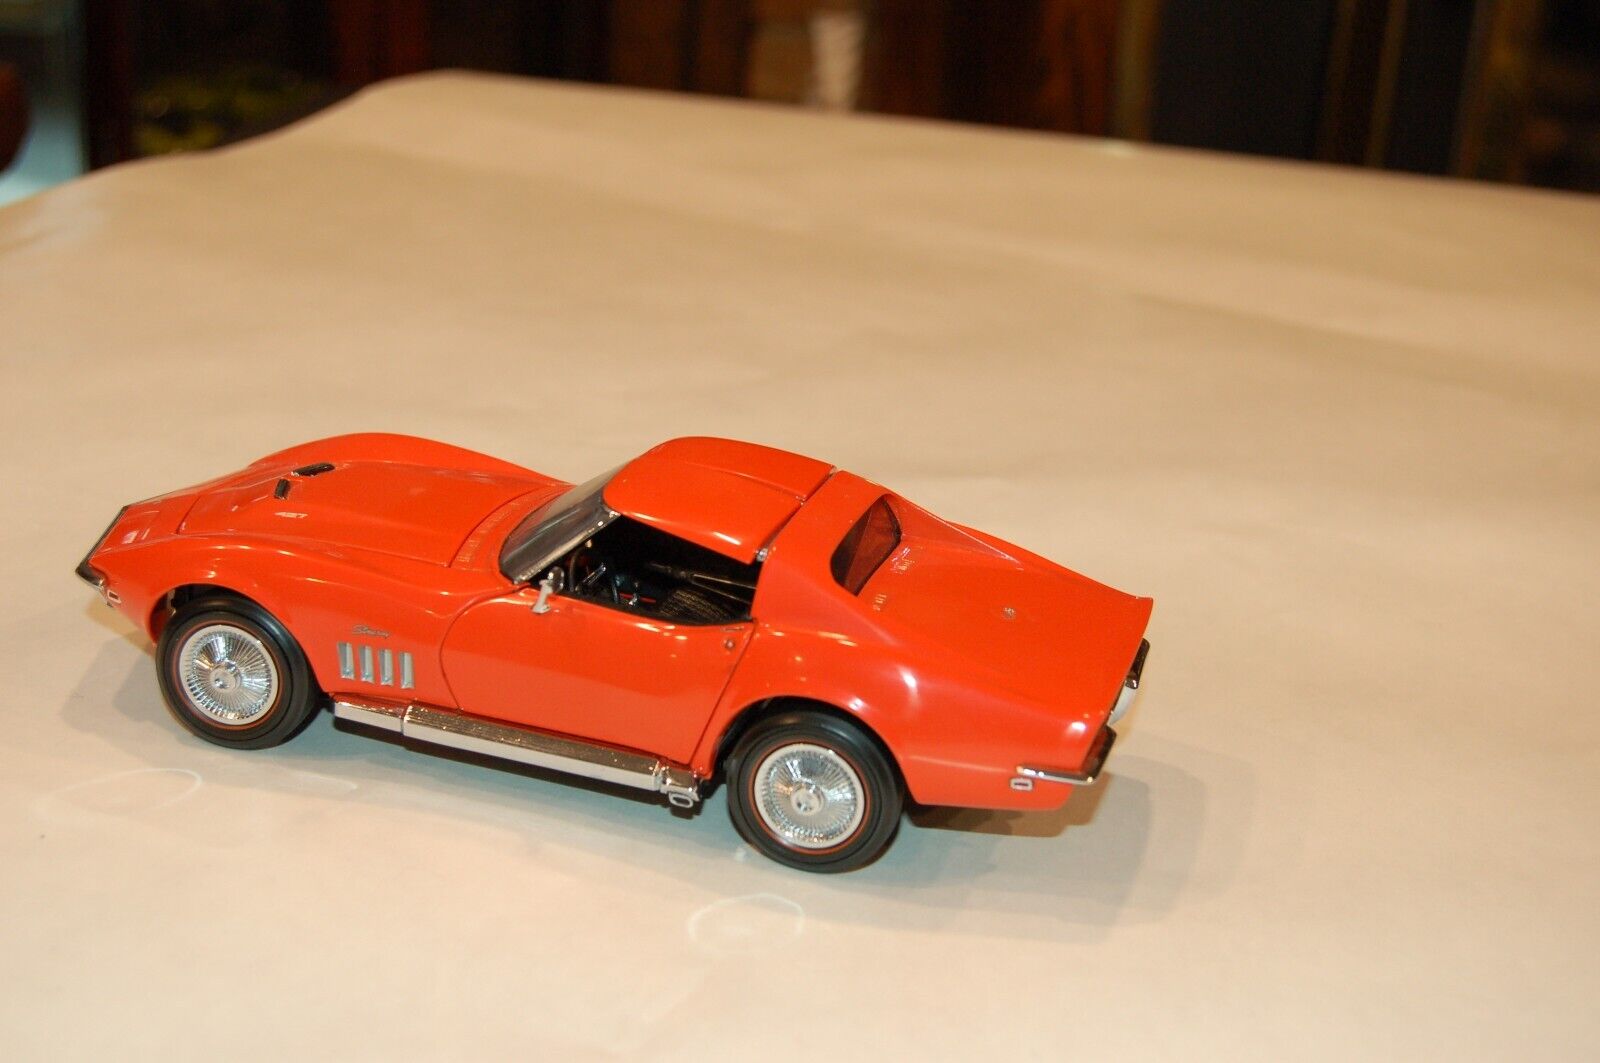 Franlin Mint Corvette 1969 427 Coupe Muscle Car